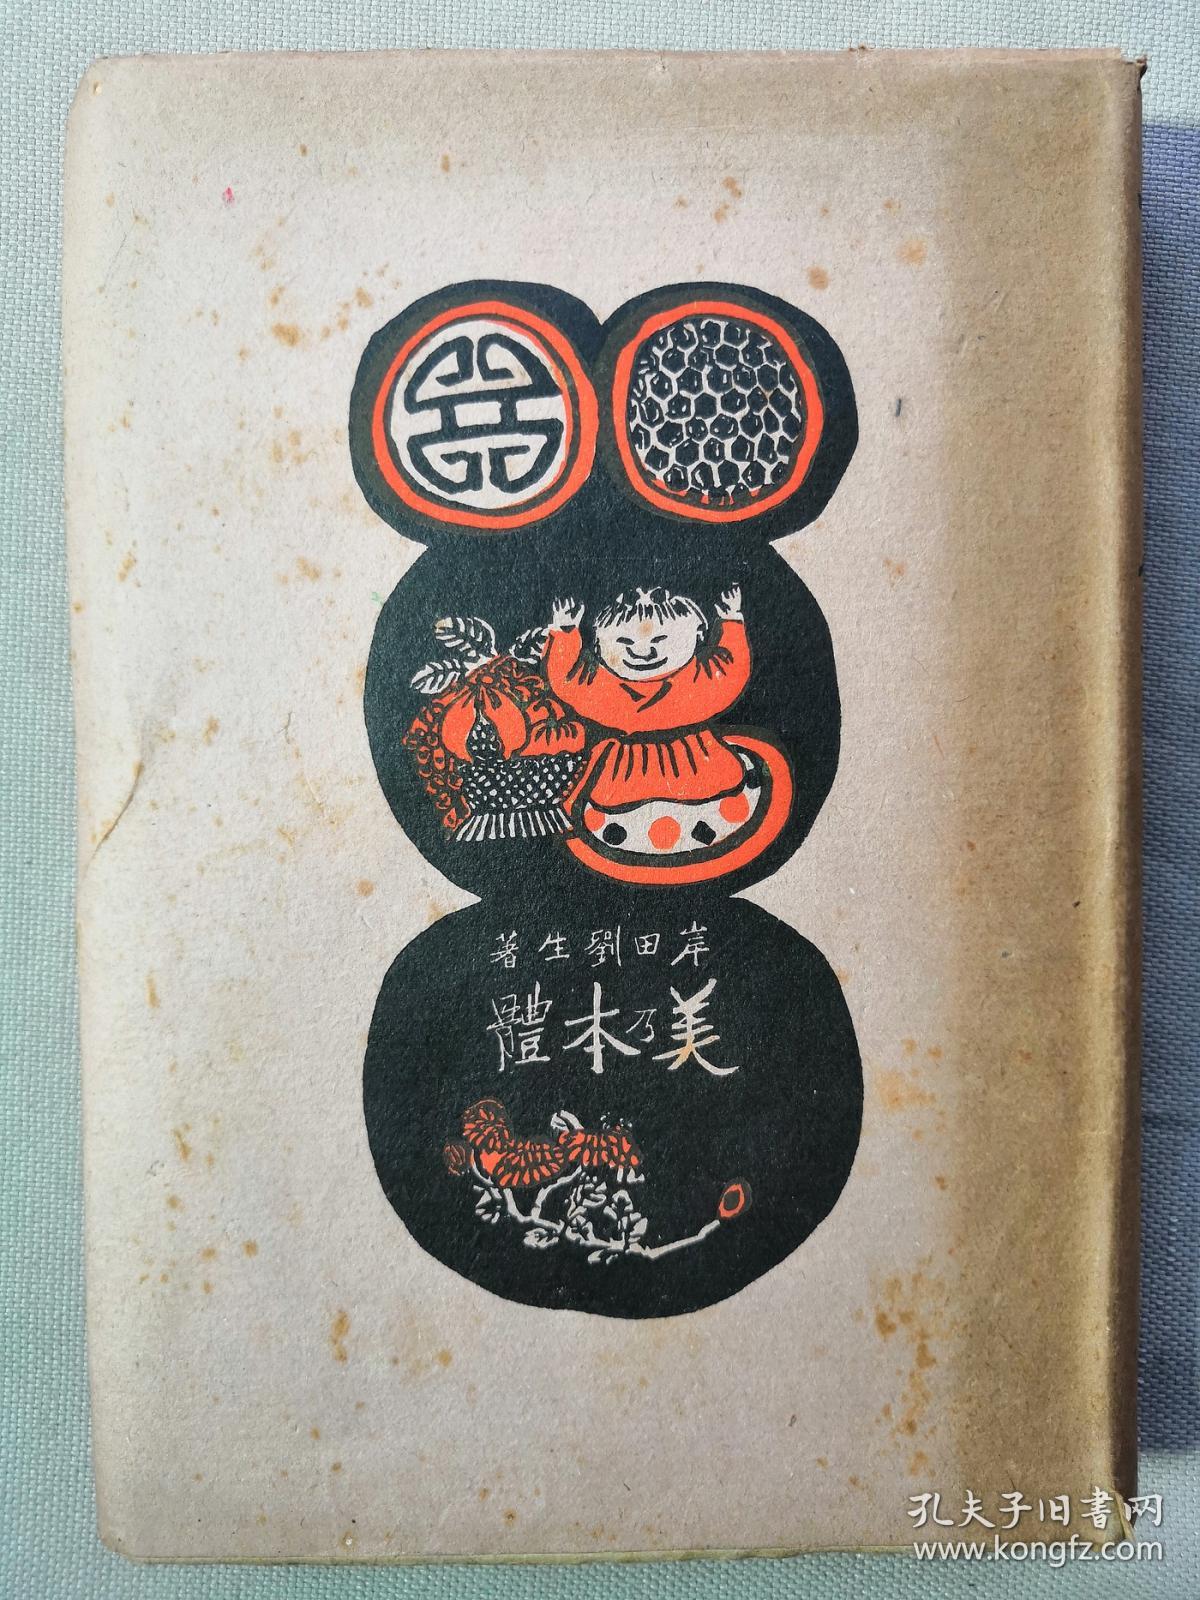 【孔网孤本】1943年 岸田刘生 著《美乃本体》